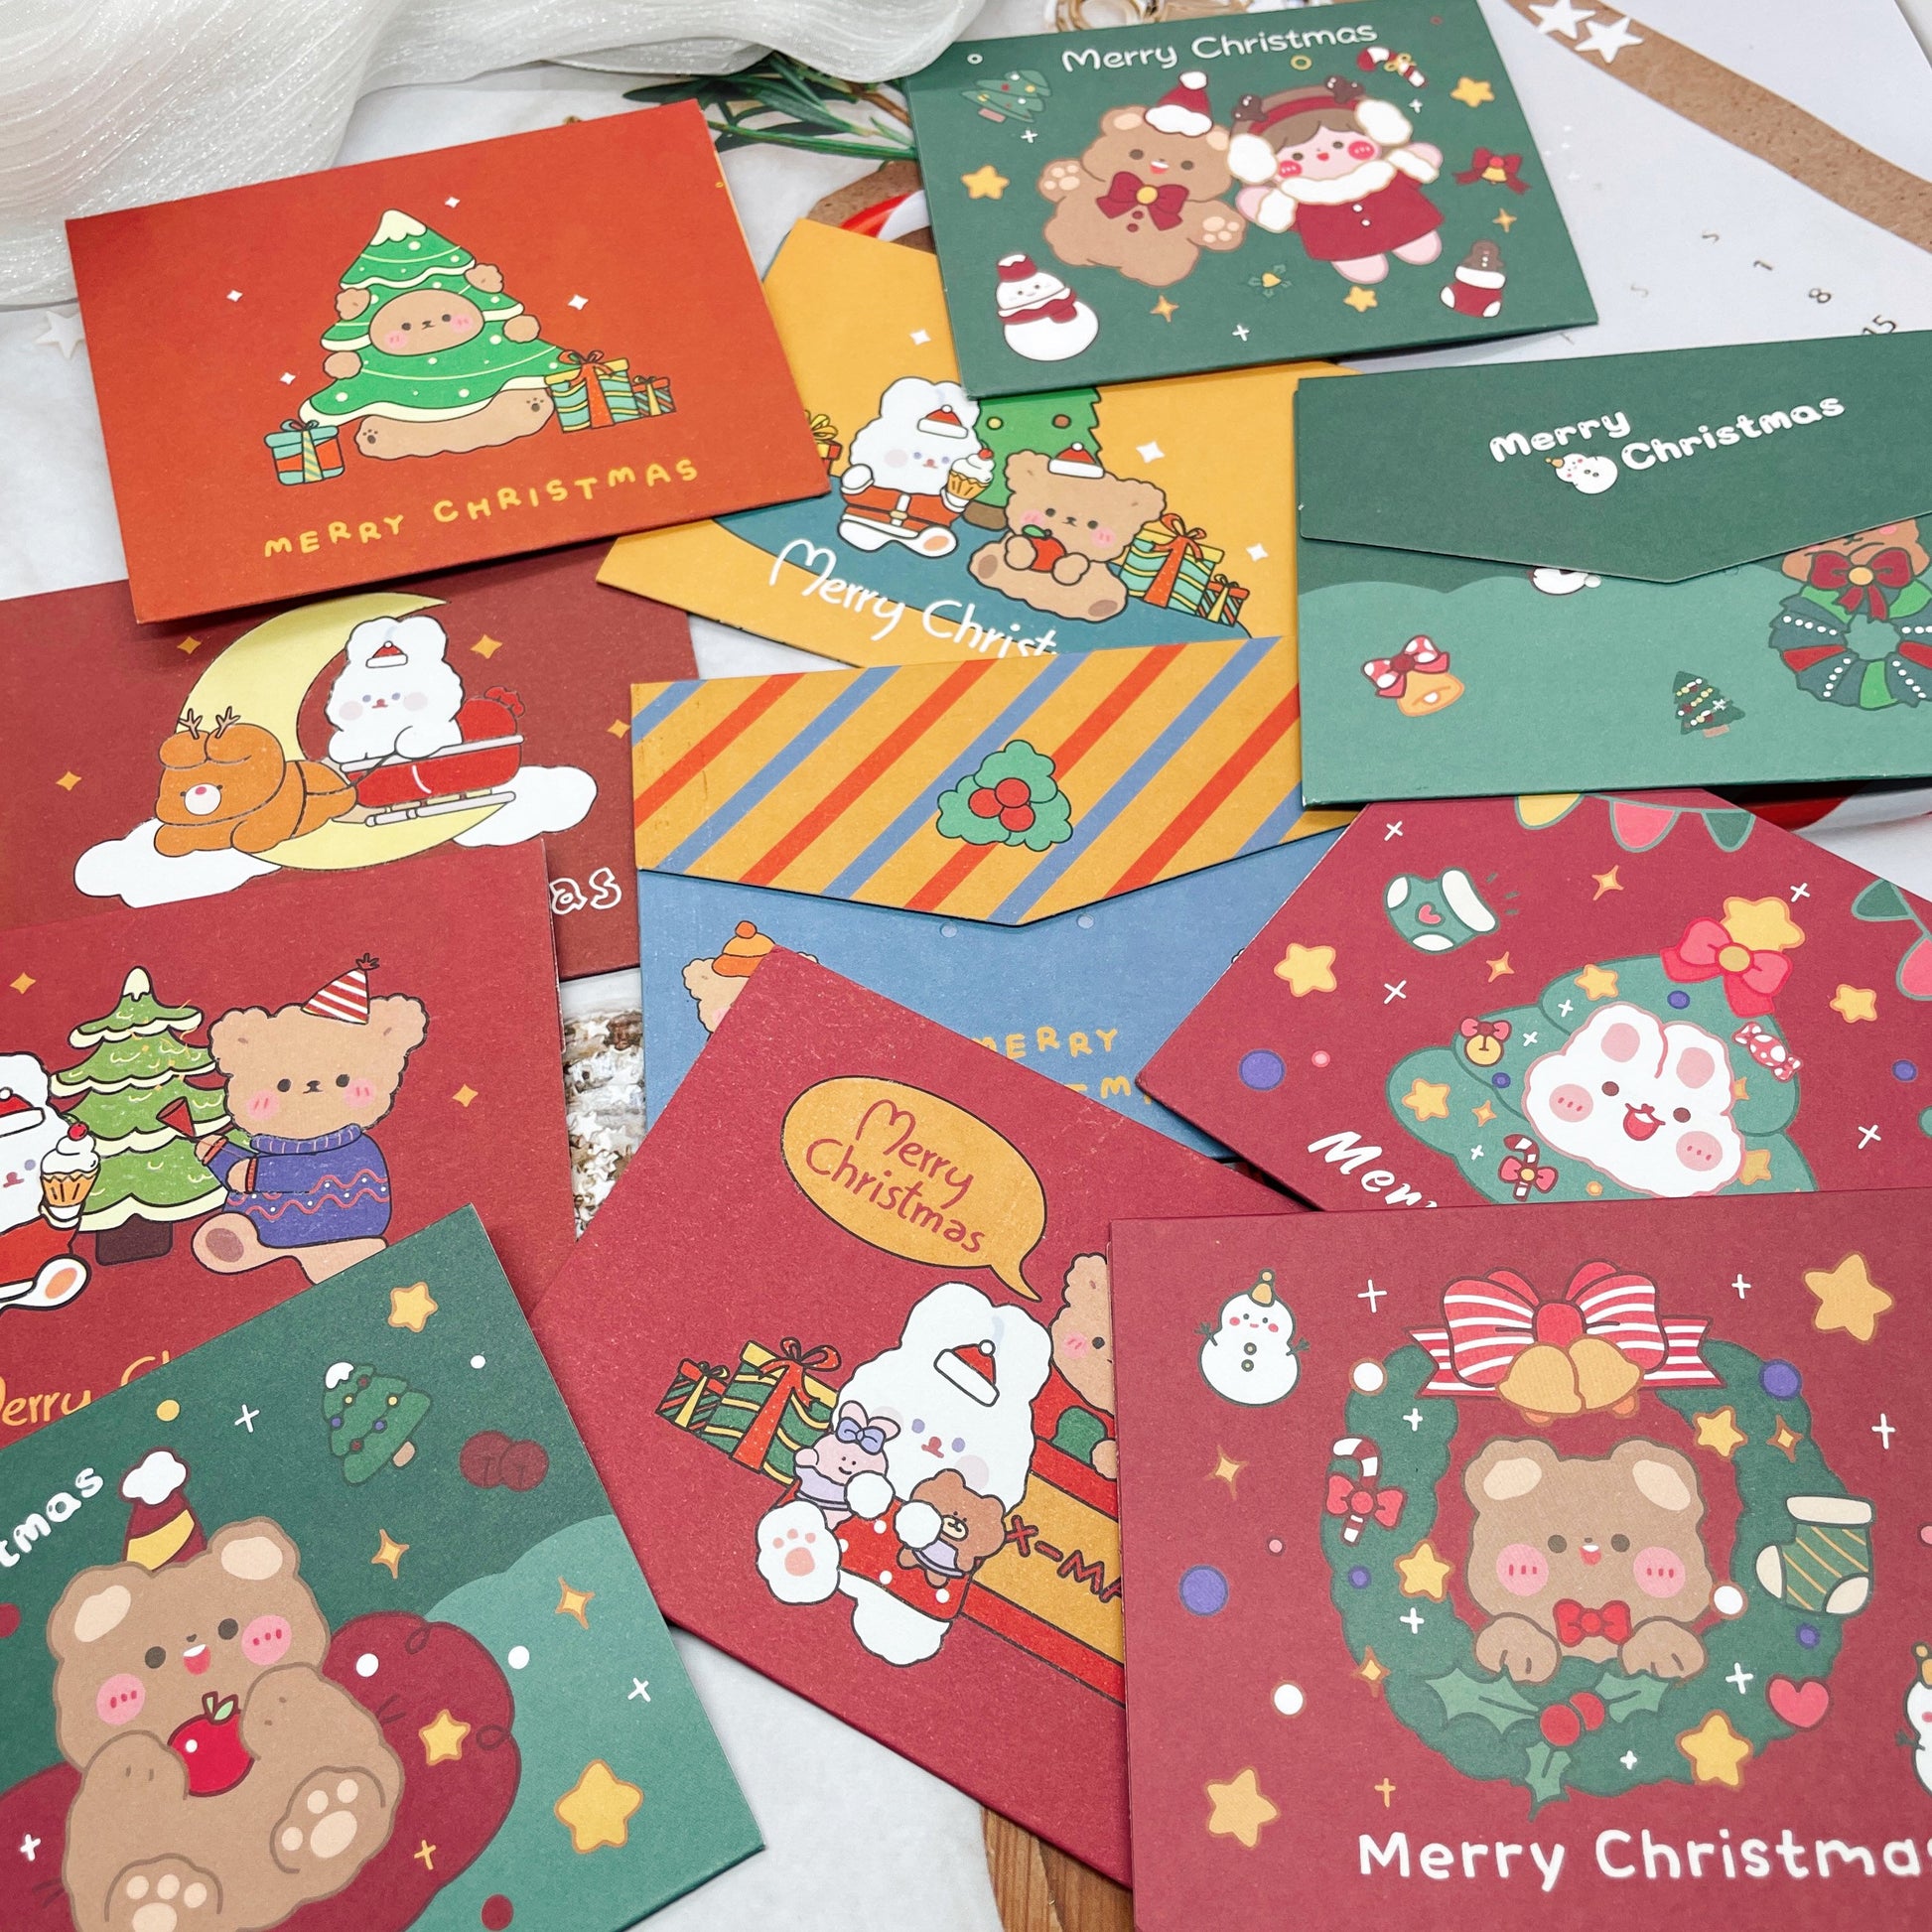 Christmas Greeting Cards - Blank Cards, Creative Greeting Cards, Cute Stationery, Kawaii Greeting Cards, Birthday Cards, Bunny, Teddy Bear